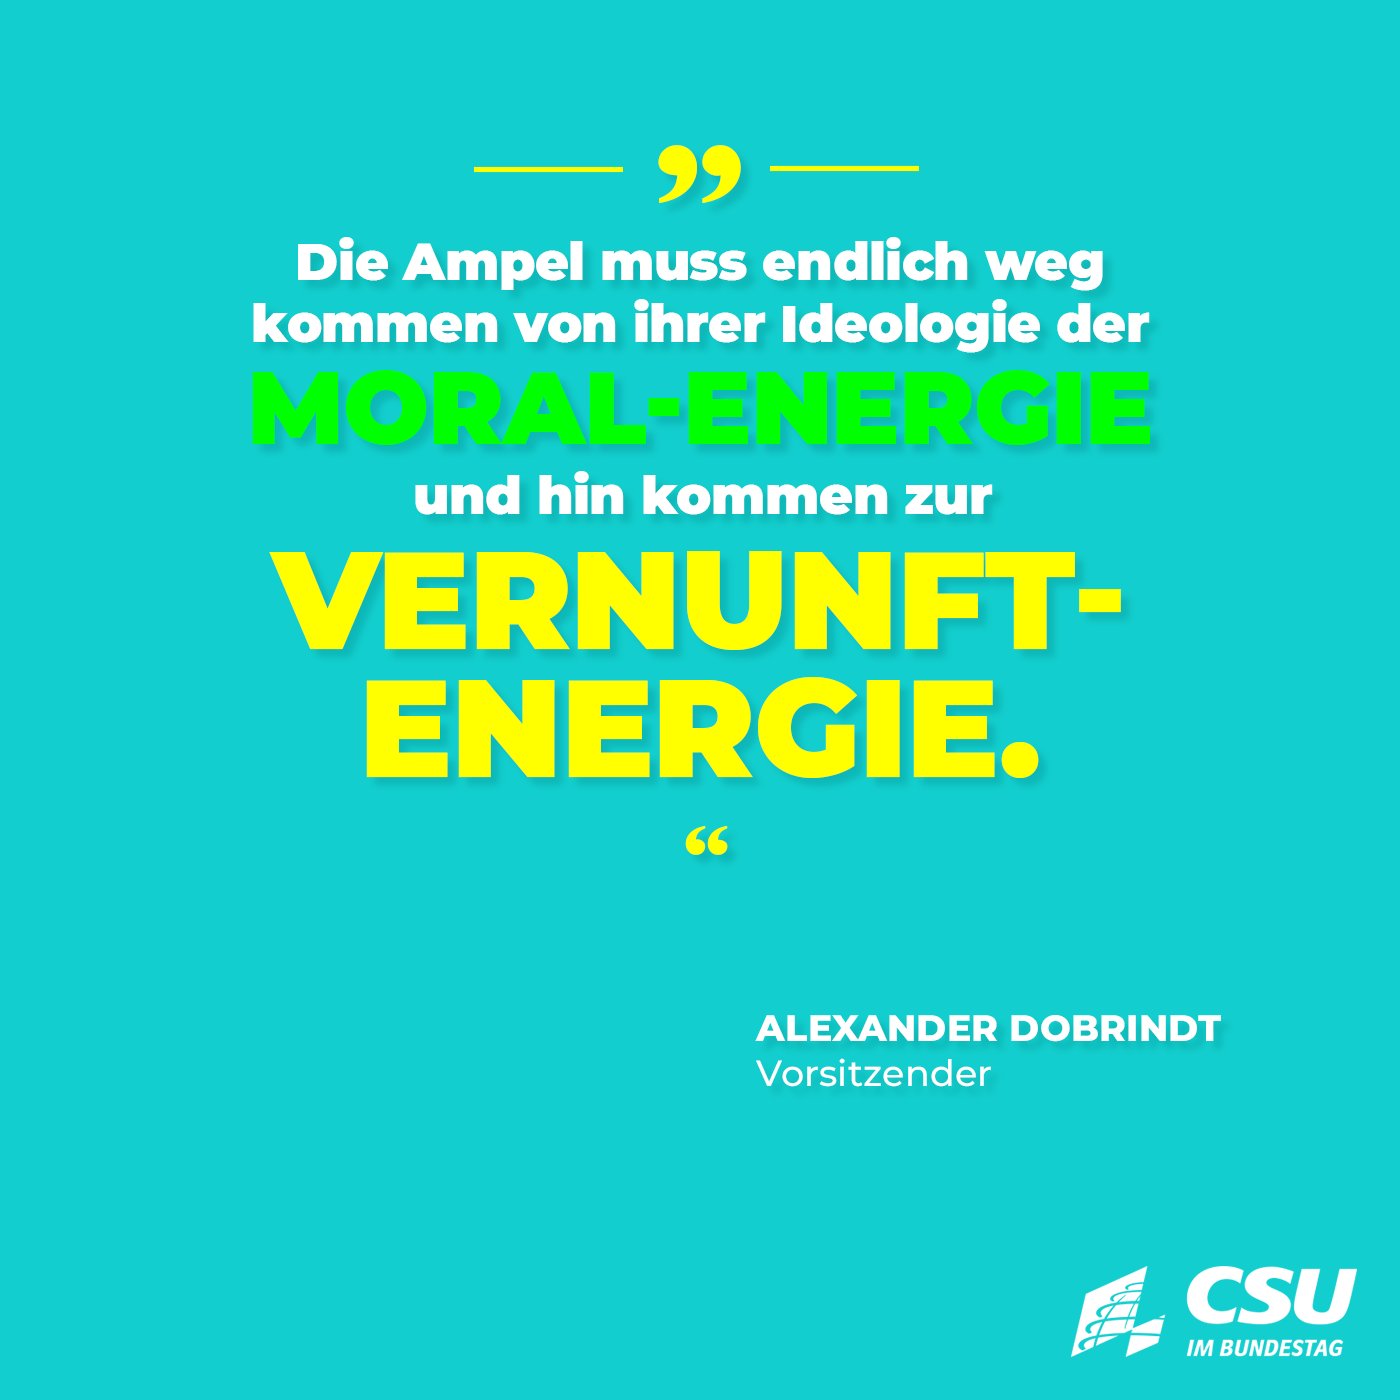 CSU im Bundestag on X: Die Ampel muss jetzt dringenden entscheiden, die  Kernkraftwerke weiterlaufen zu lassen. Bei einer drohenden Energielücke  wird die Regierung keine Solidarität bei unseren Nachbarn erwarten können,  wenn wir